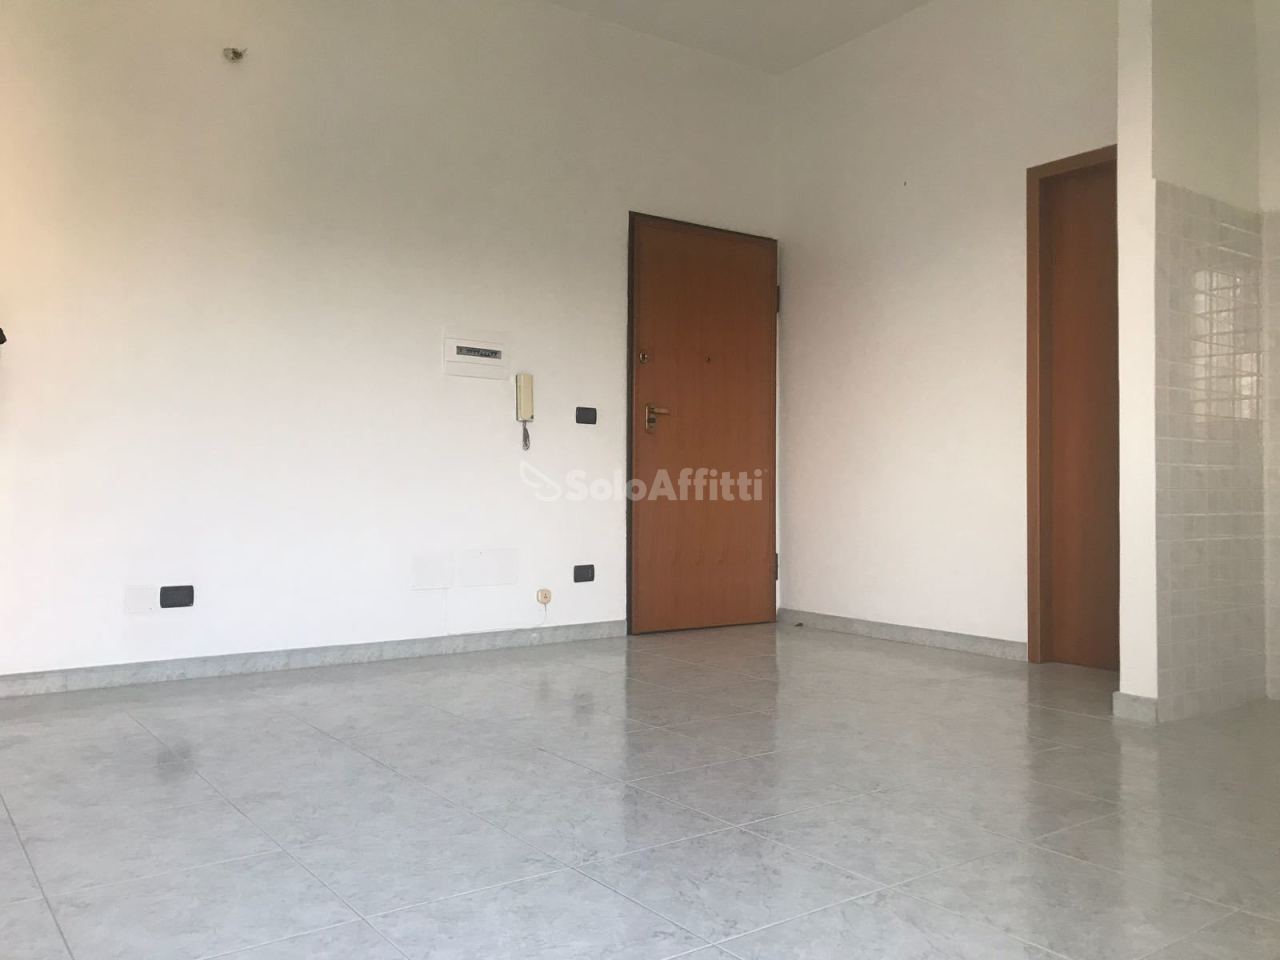 Appartamento in affitto a Reggio Calabria, 2 locali, prezzo € 280 | PortaleAgenzieImmobiliari.it